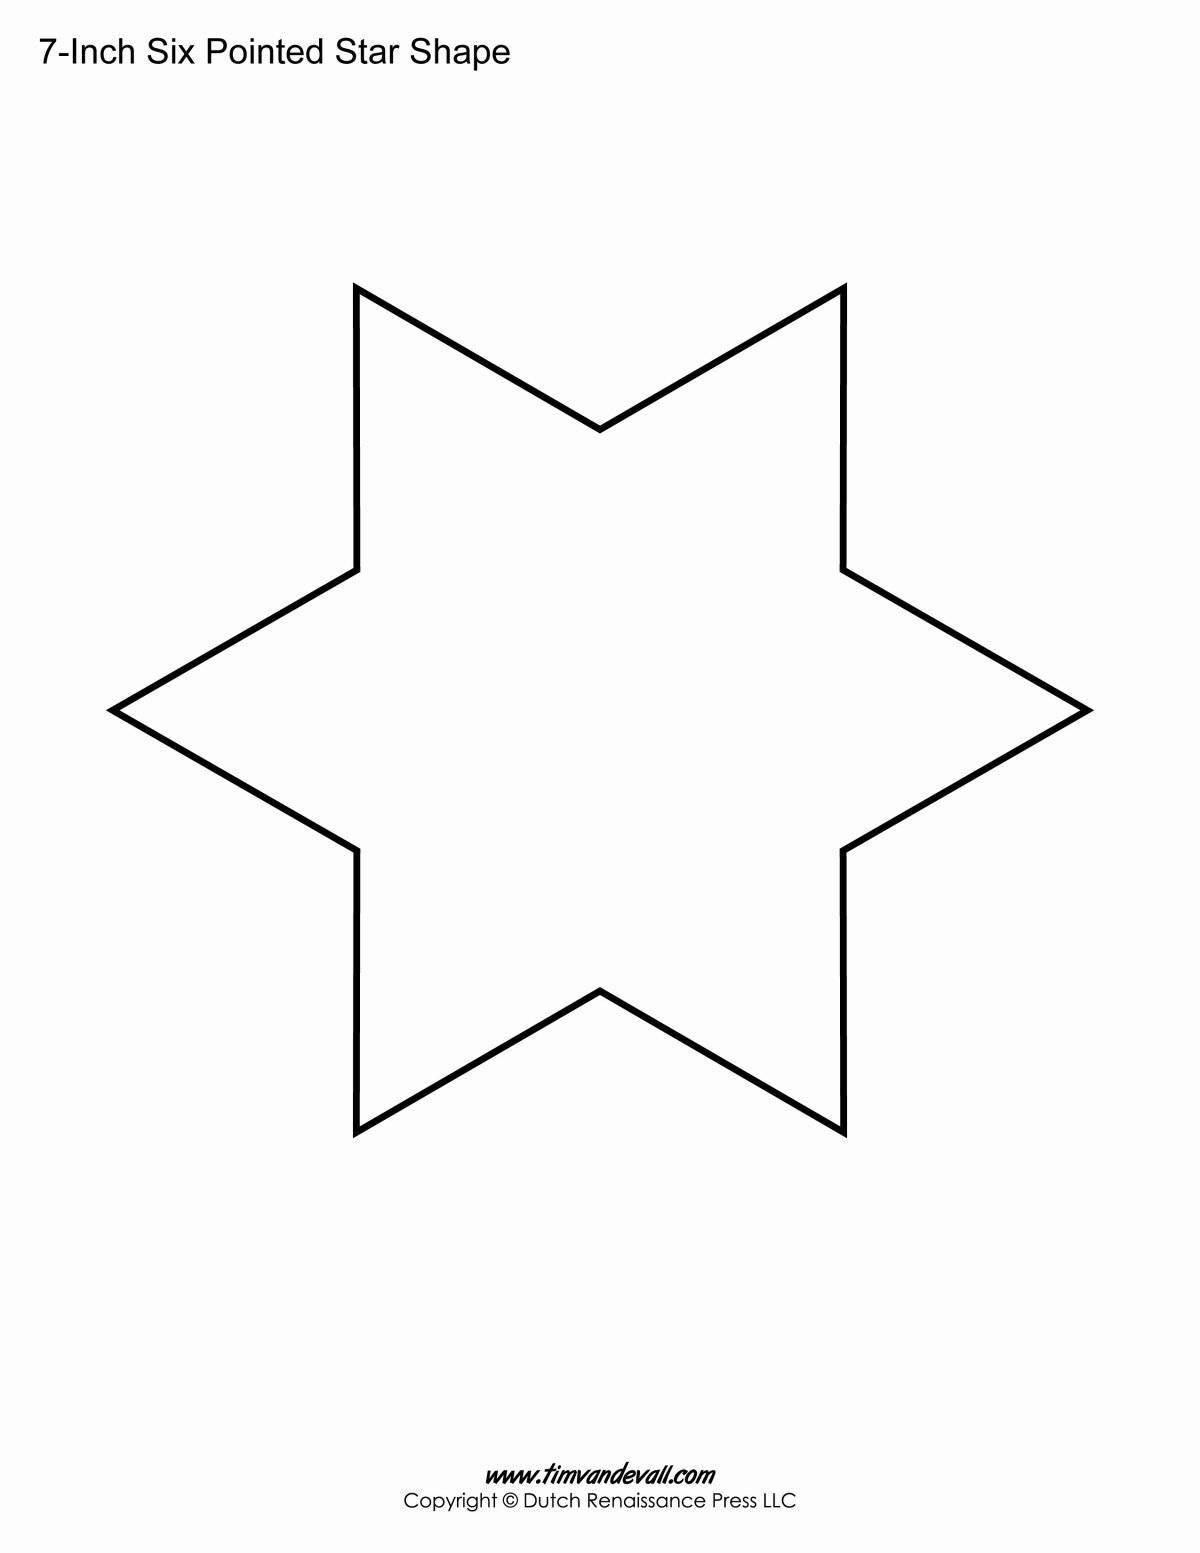 Увлекательная страница раскраски с шестиконечной звездой